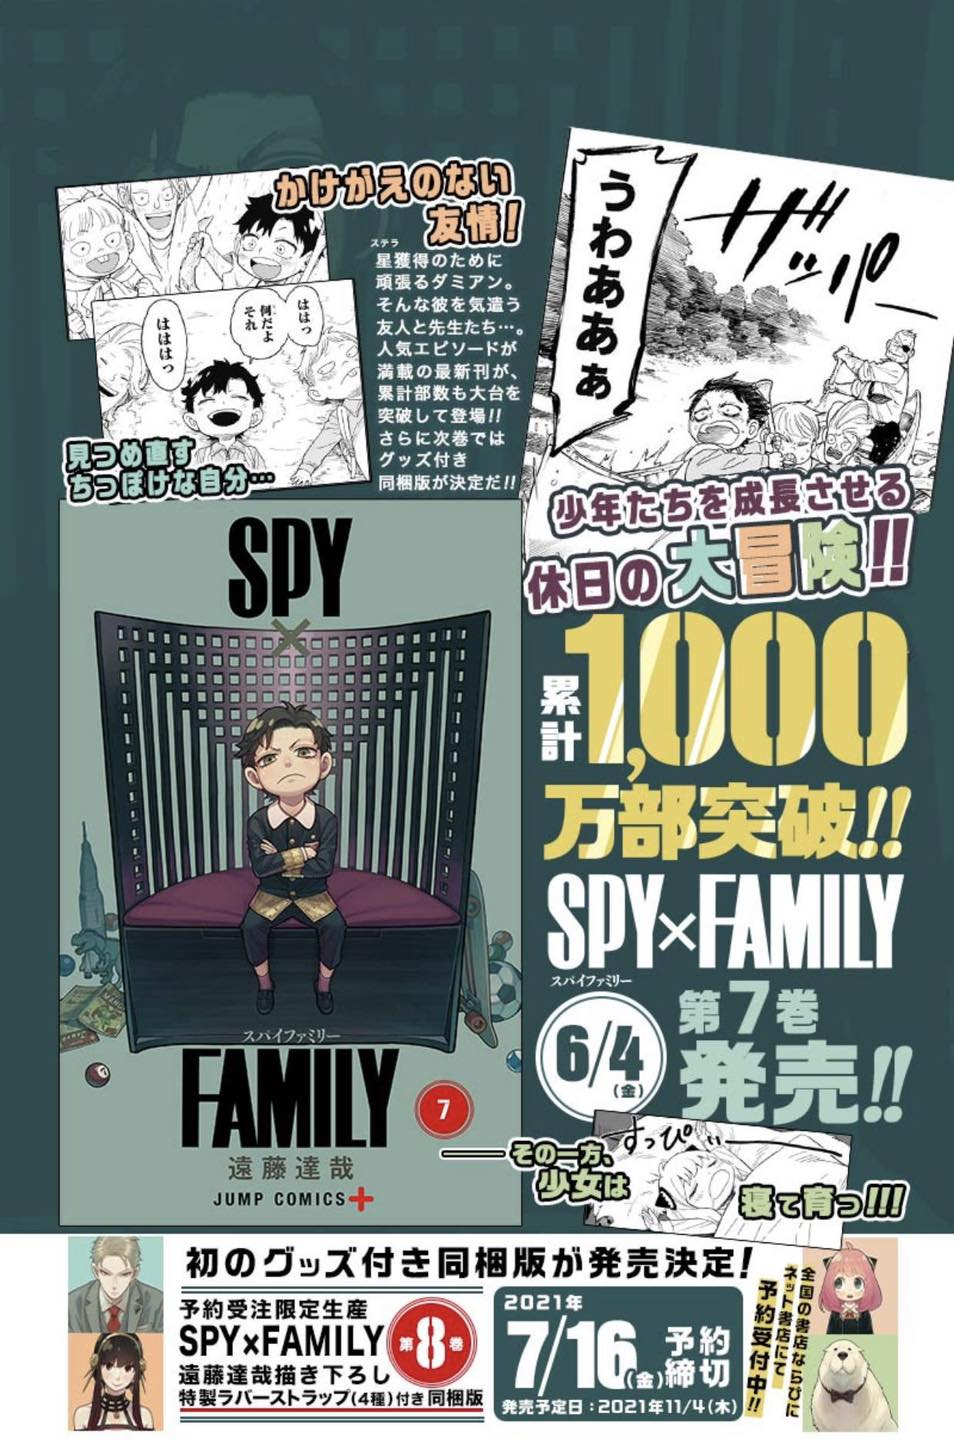 spy x family commemorative poster